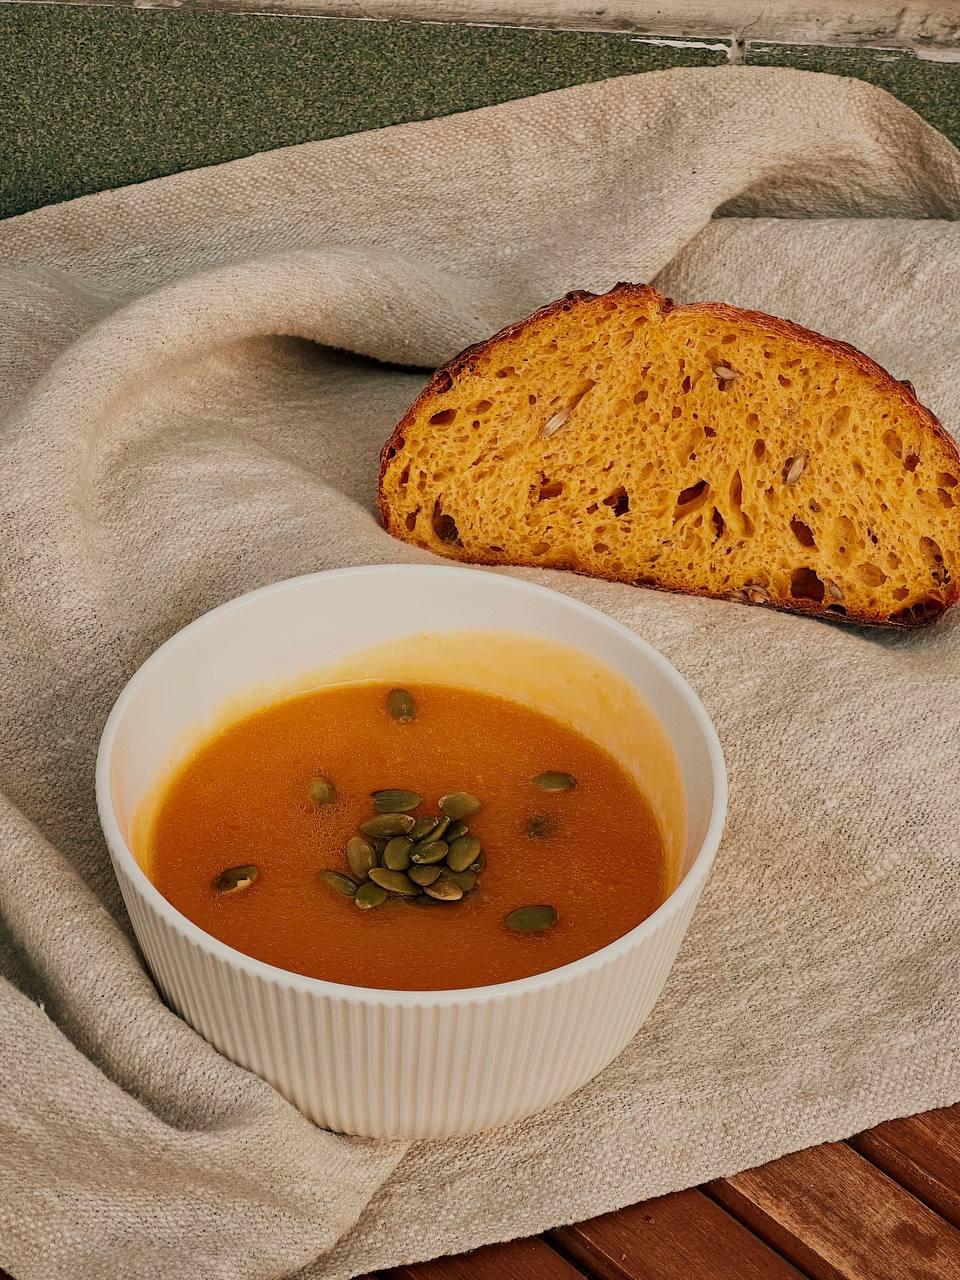 Pumpkin cream soup,  "Bread factory No. 1"